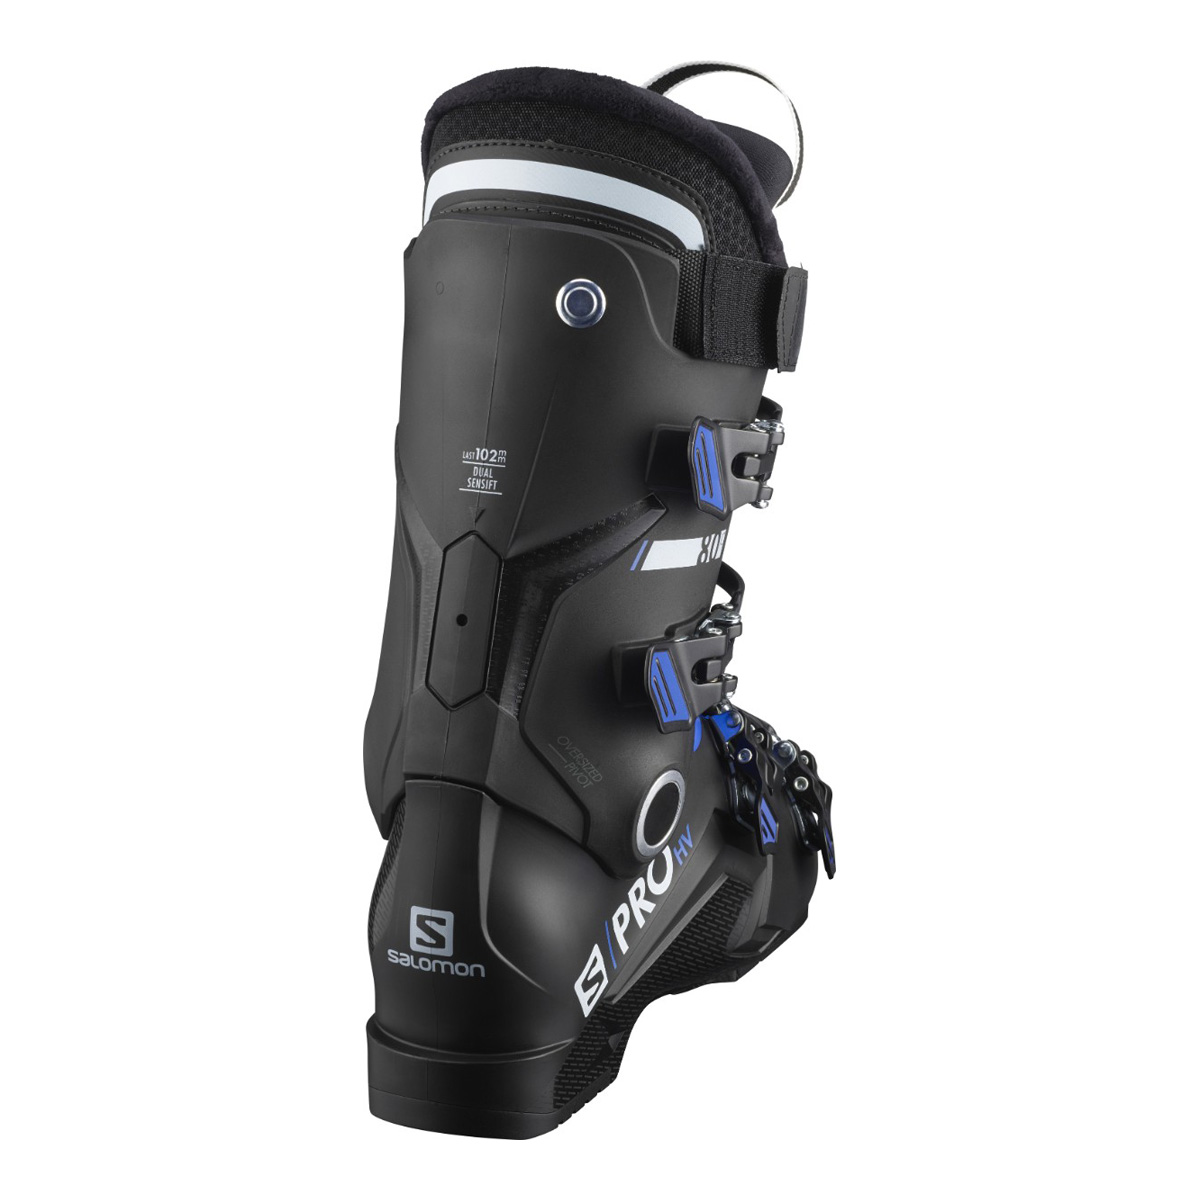 Ботинки горнолыжные Salomon 20-21 S/Pro HV 80 IC Black/Race Blue, цвет черный, размер 27,0/27,5 см L41174800 - фото 3